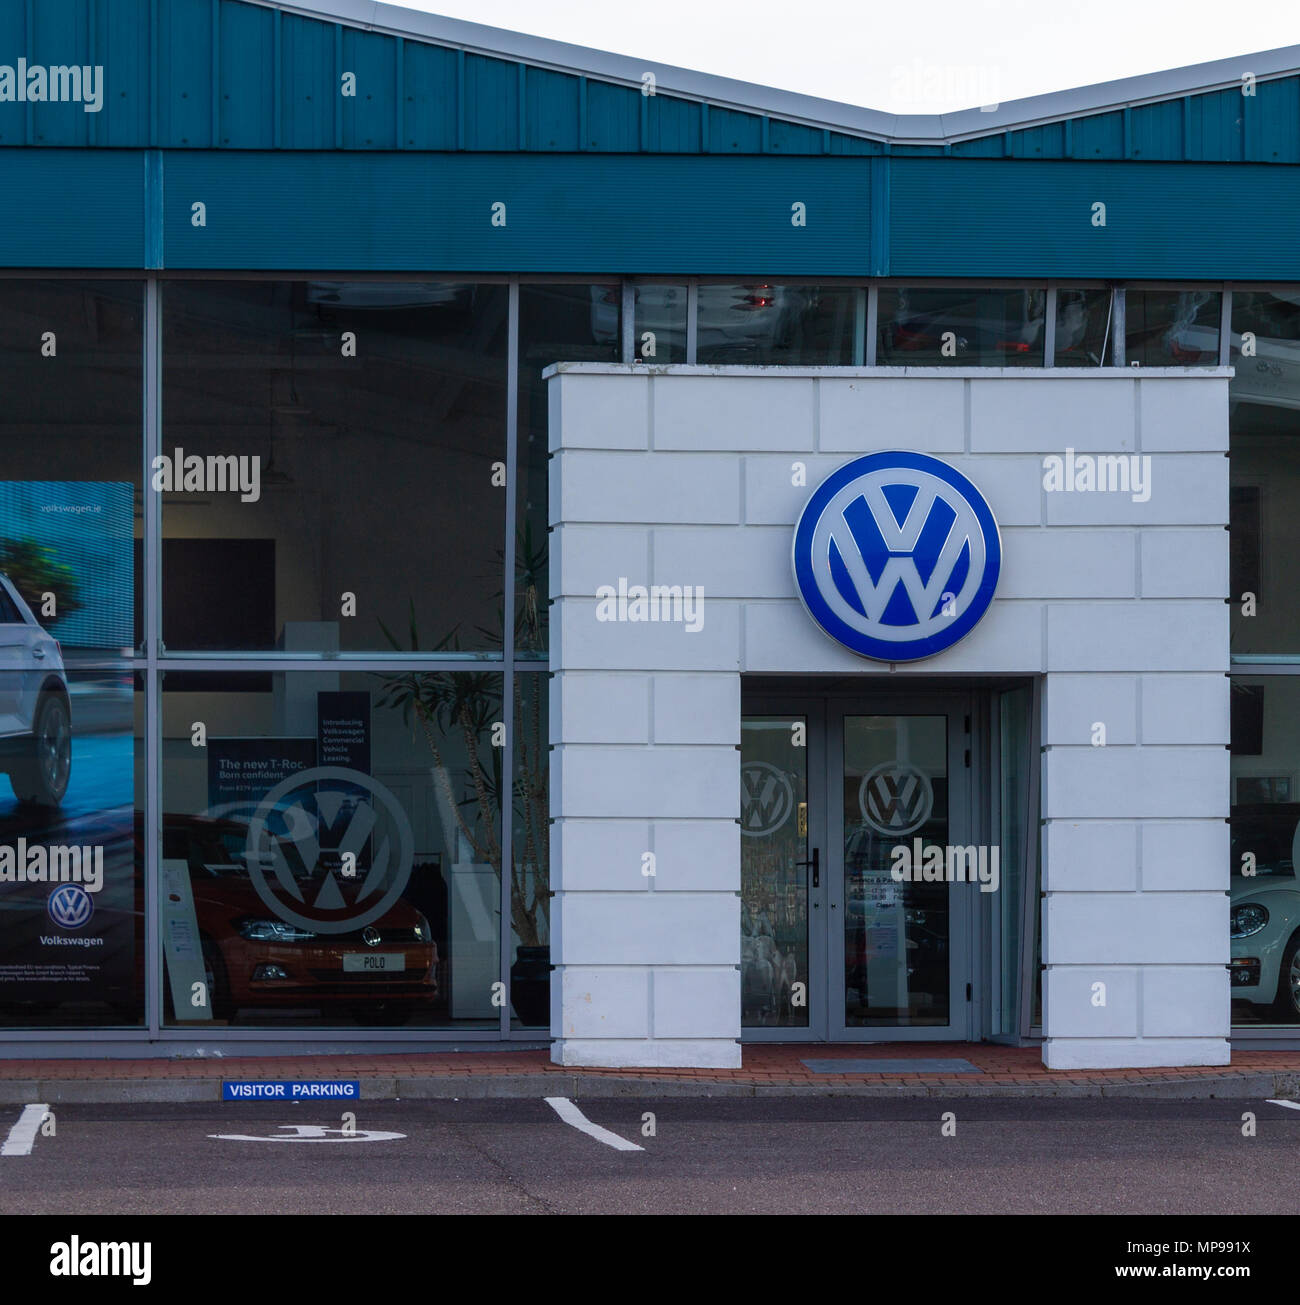 Volkswagen logo above the doorway entrance to a volkswagen saleroom Stock Photo